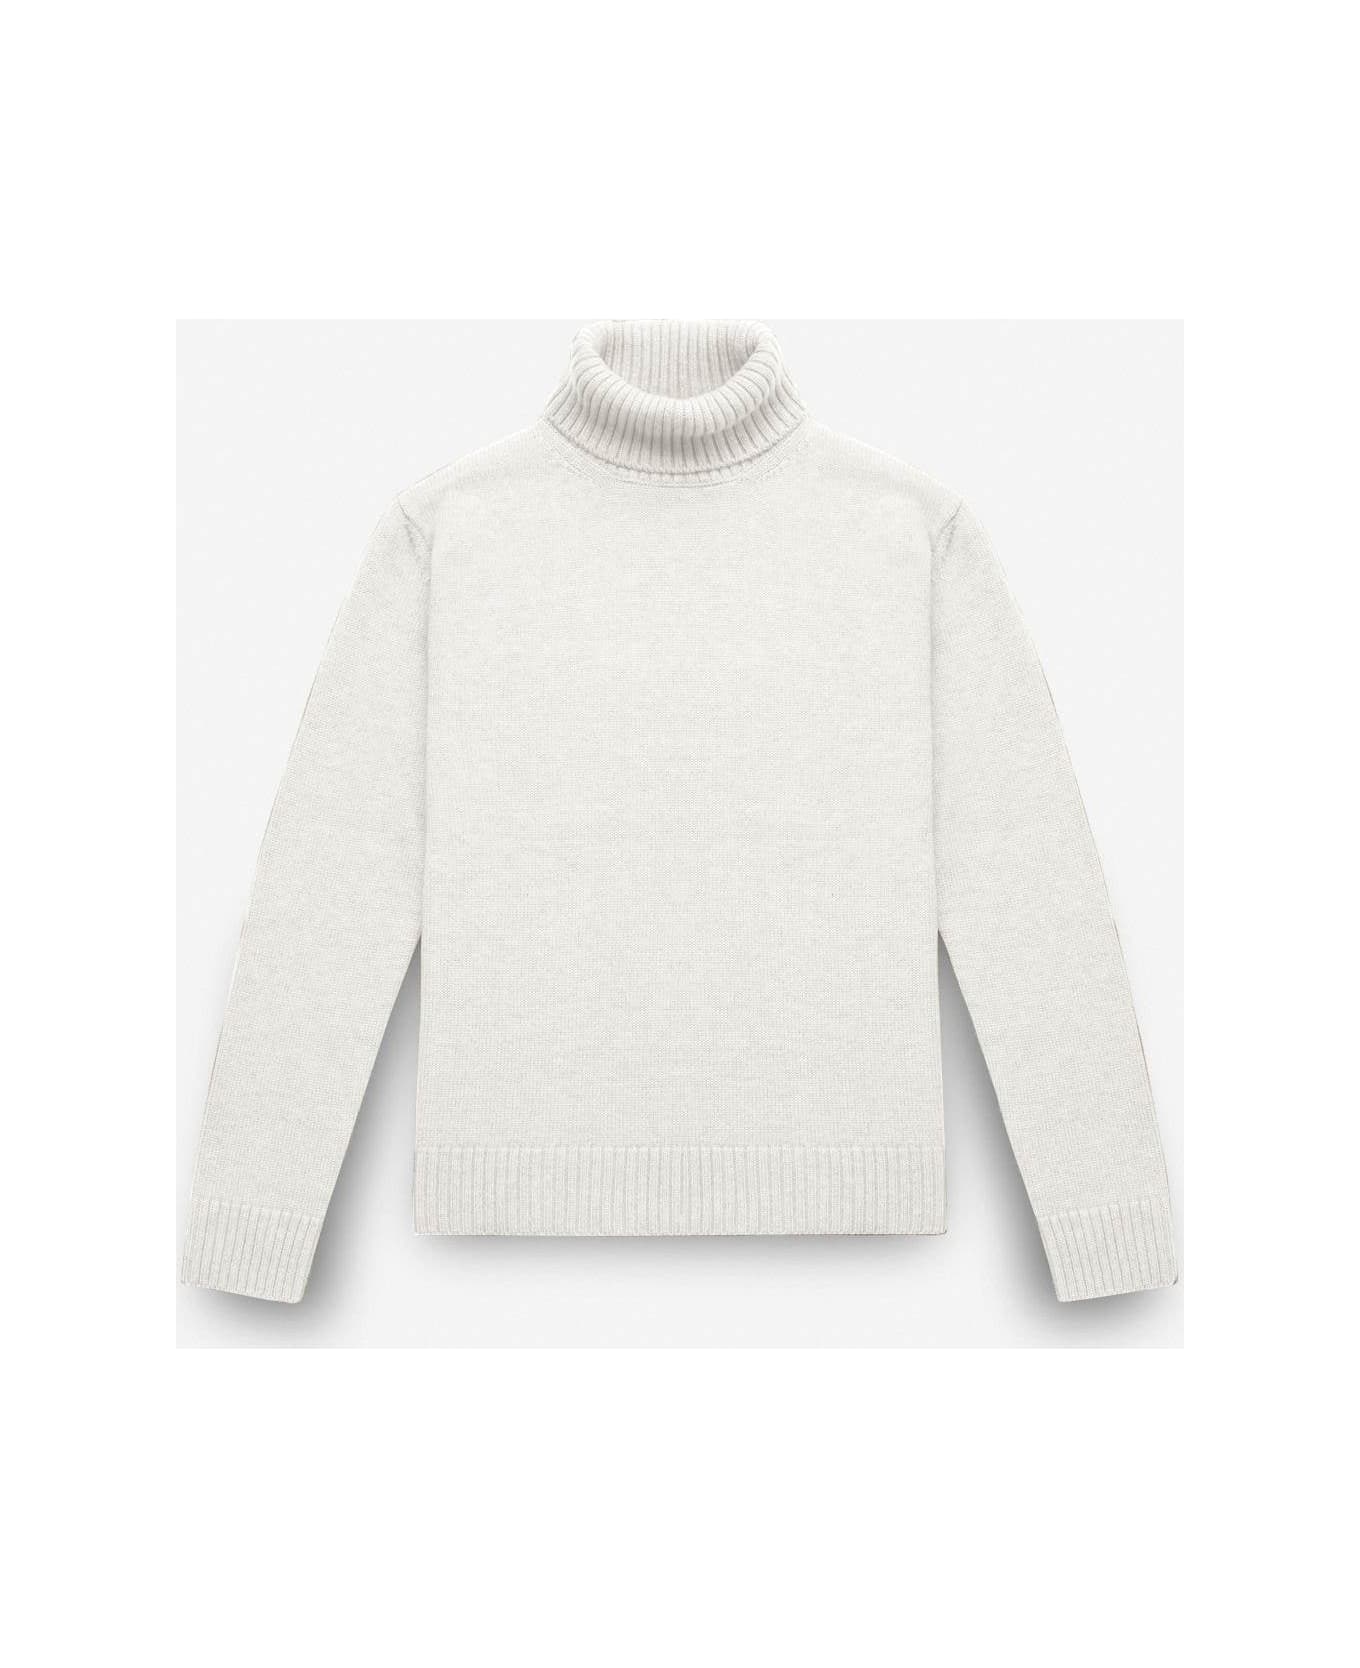 Larusmiani Turtleneck Sweater 'diablerets' Sweater - Ivory